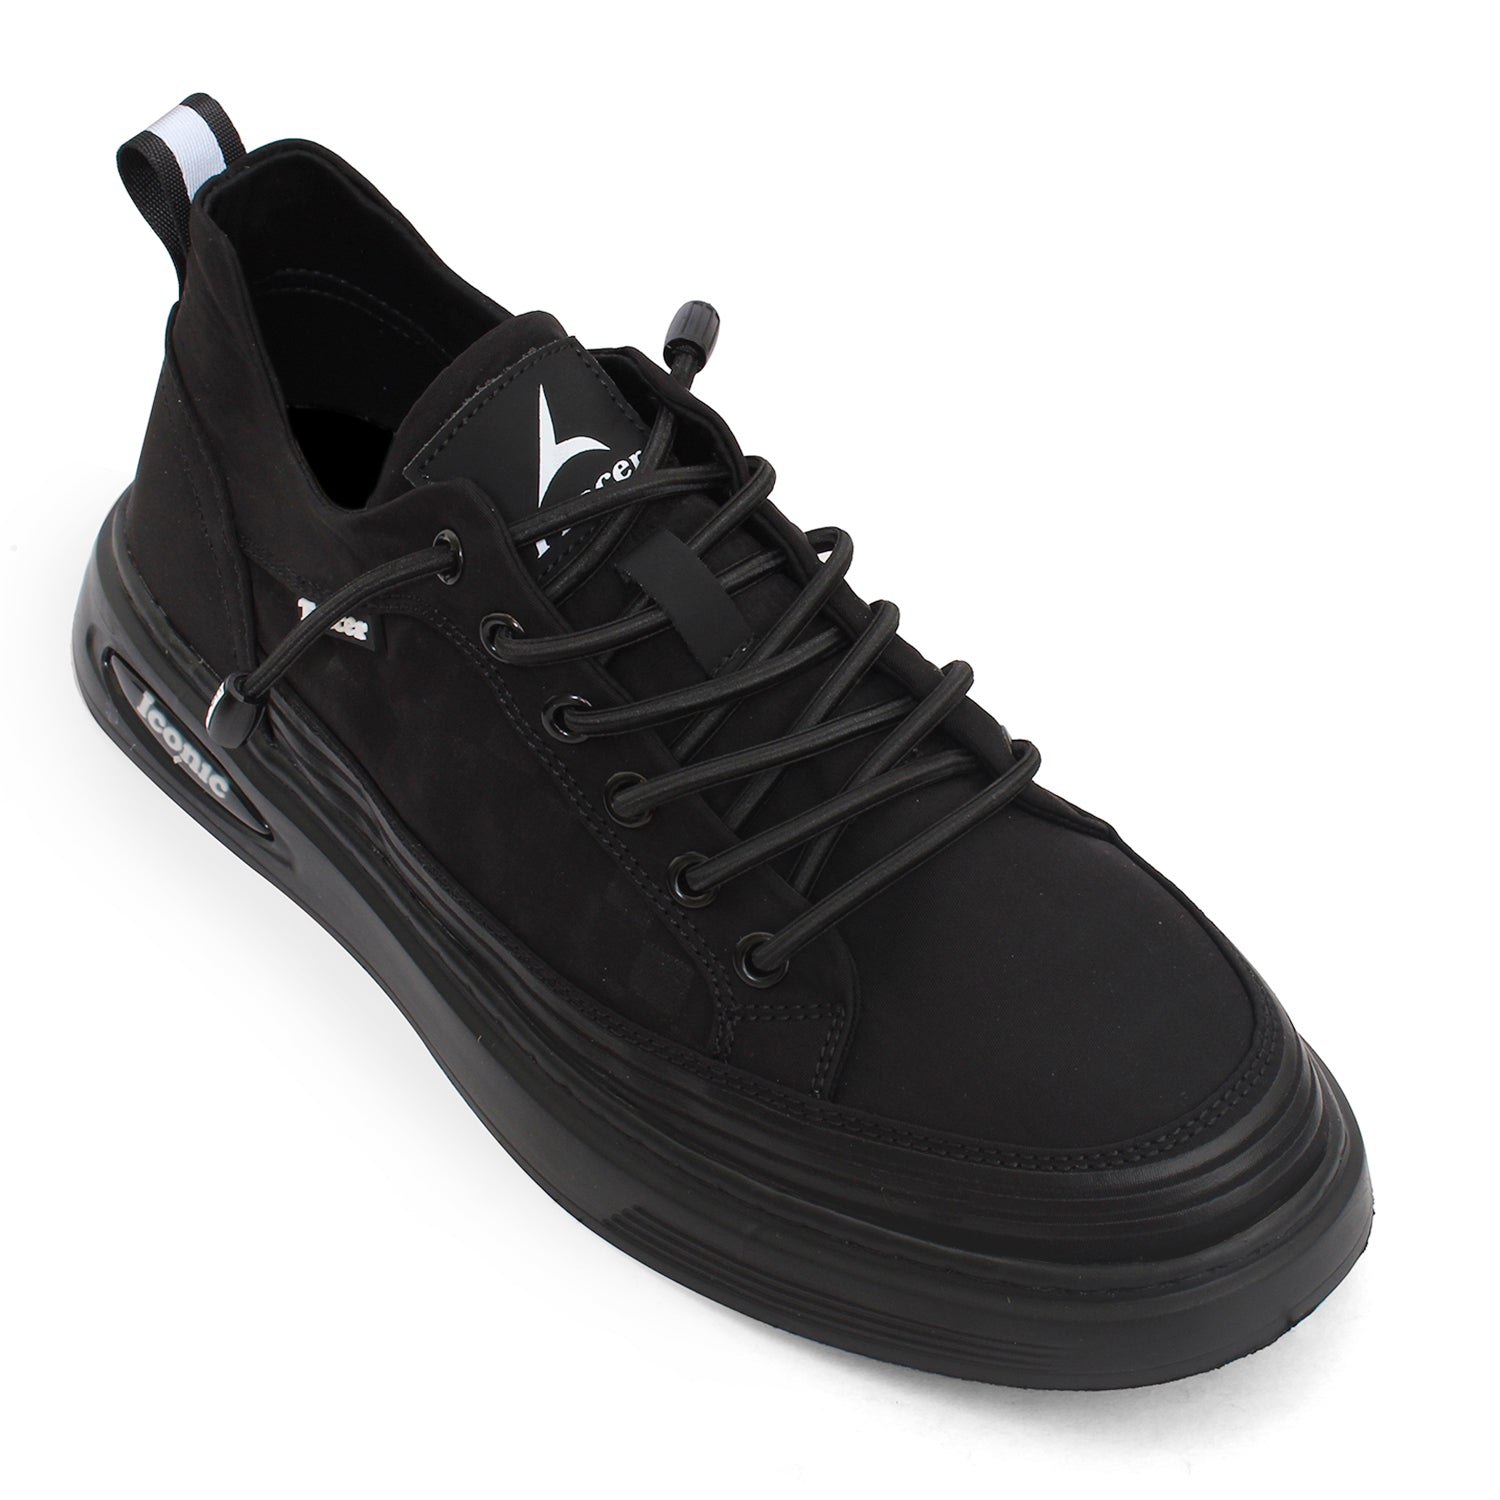 Tracer Scoosh 2714 Sneaker for Men's Black